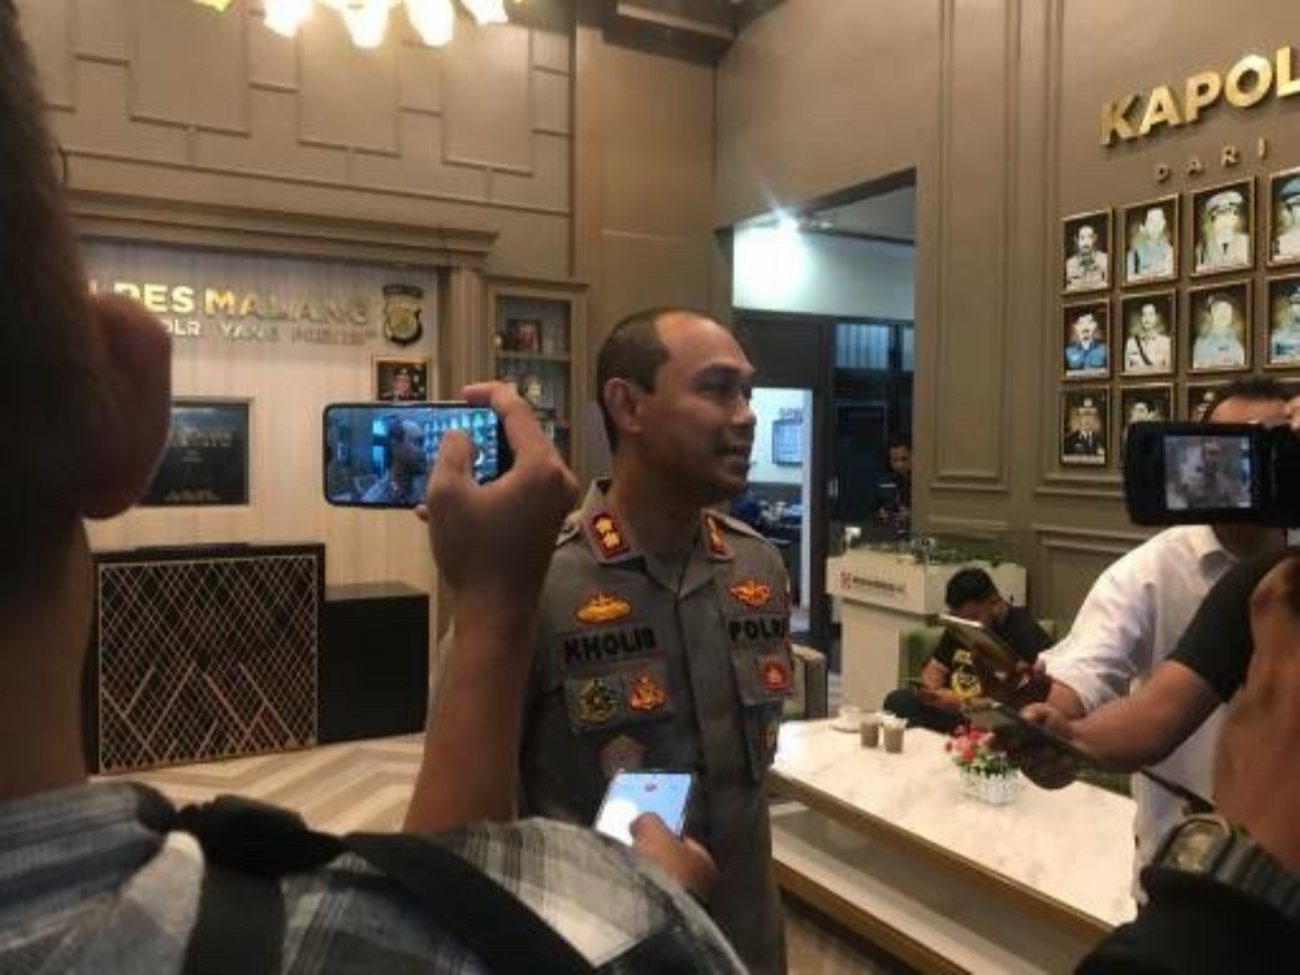 Kapolres Malang, AKBP Puti Kholis dan jajarannya berdiskusi dengan Aremania terkait proses penanganan kasus tragedi Kanjuruhan. (Foto: Istimewa)